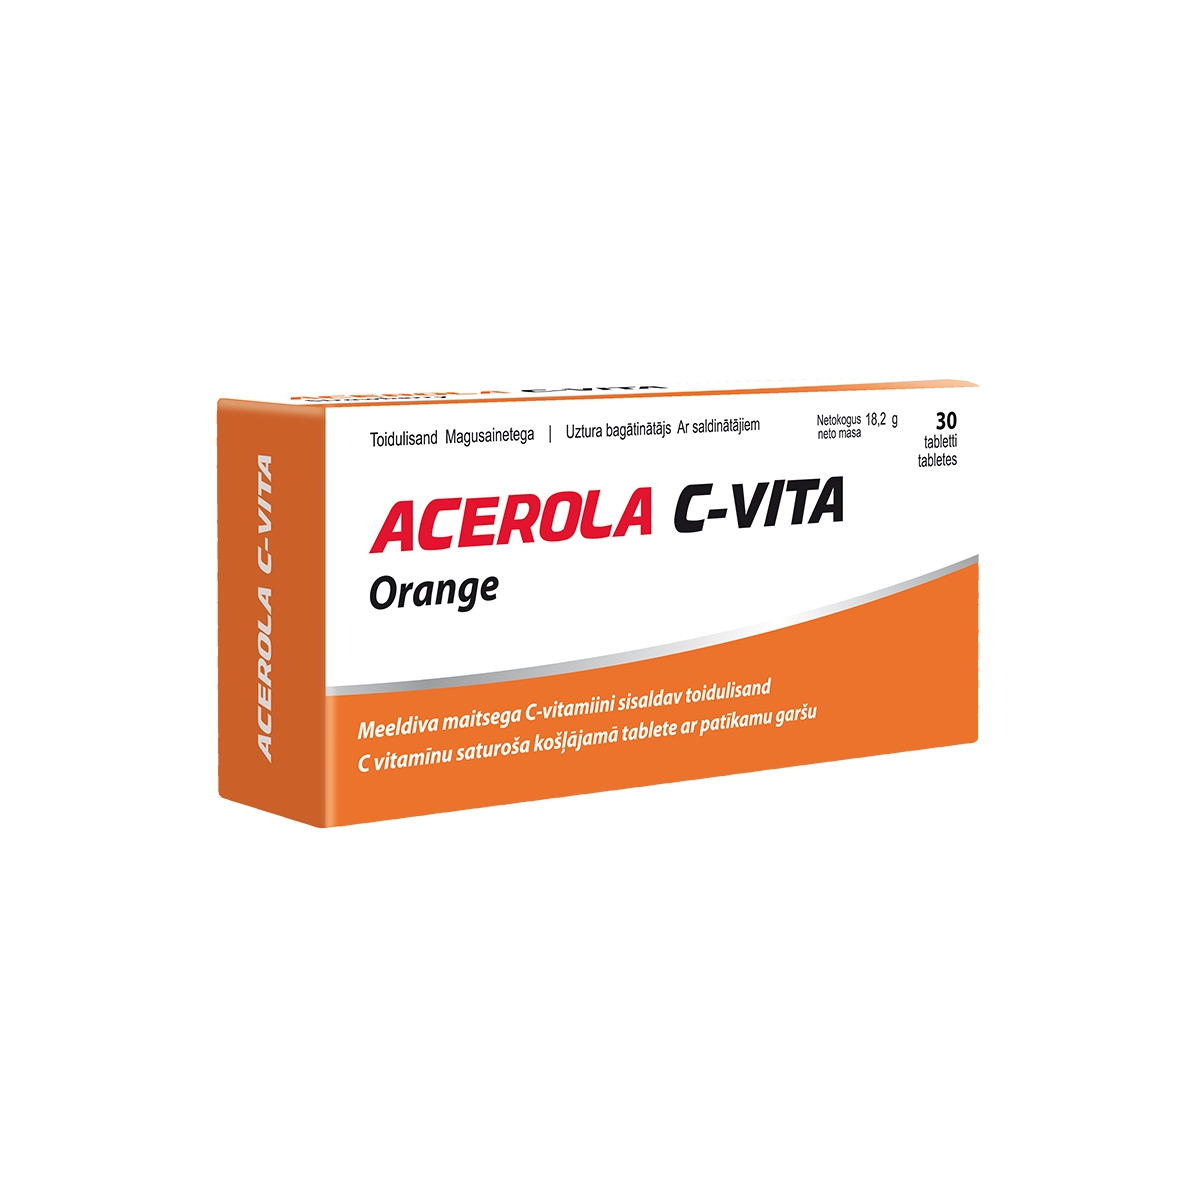 ACEROLA C-Vita Orange tab.N30